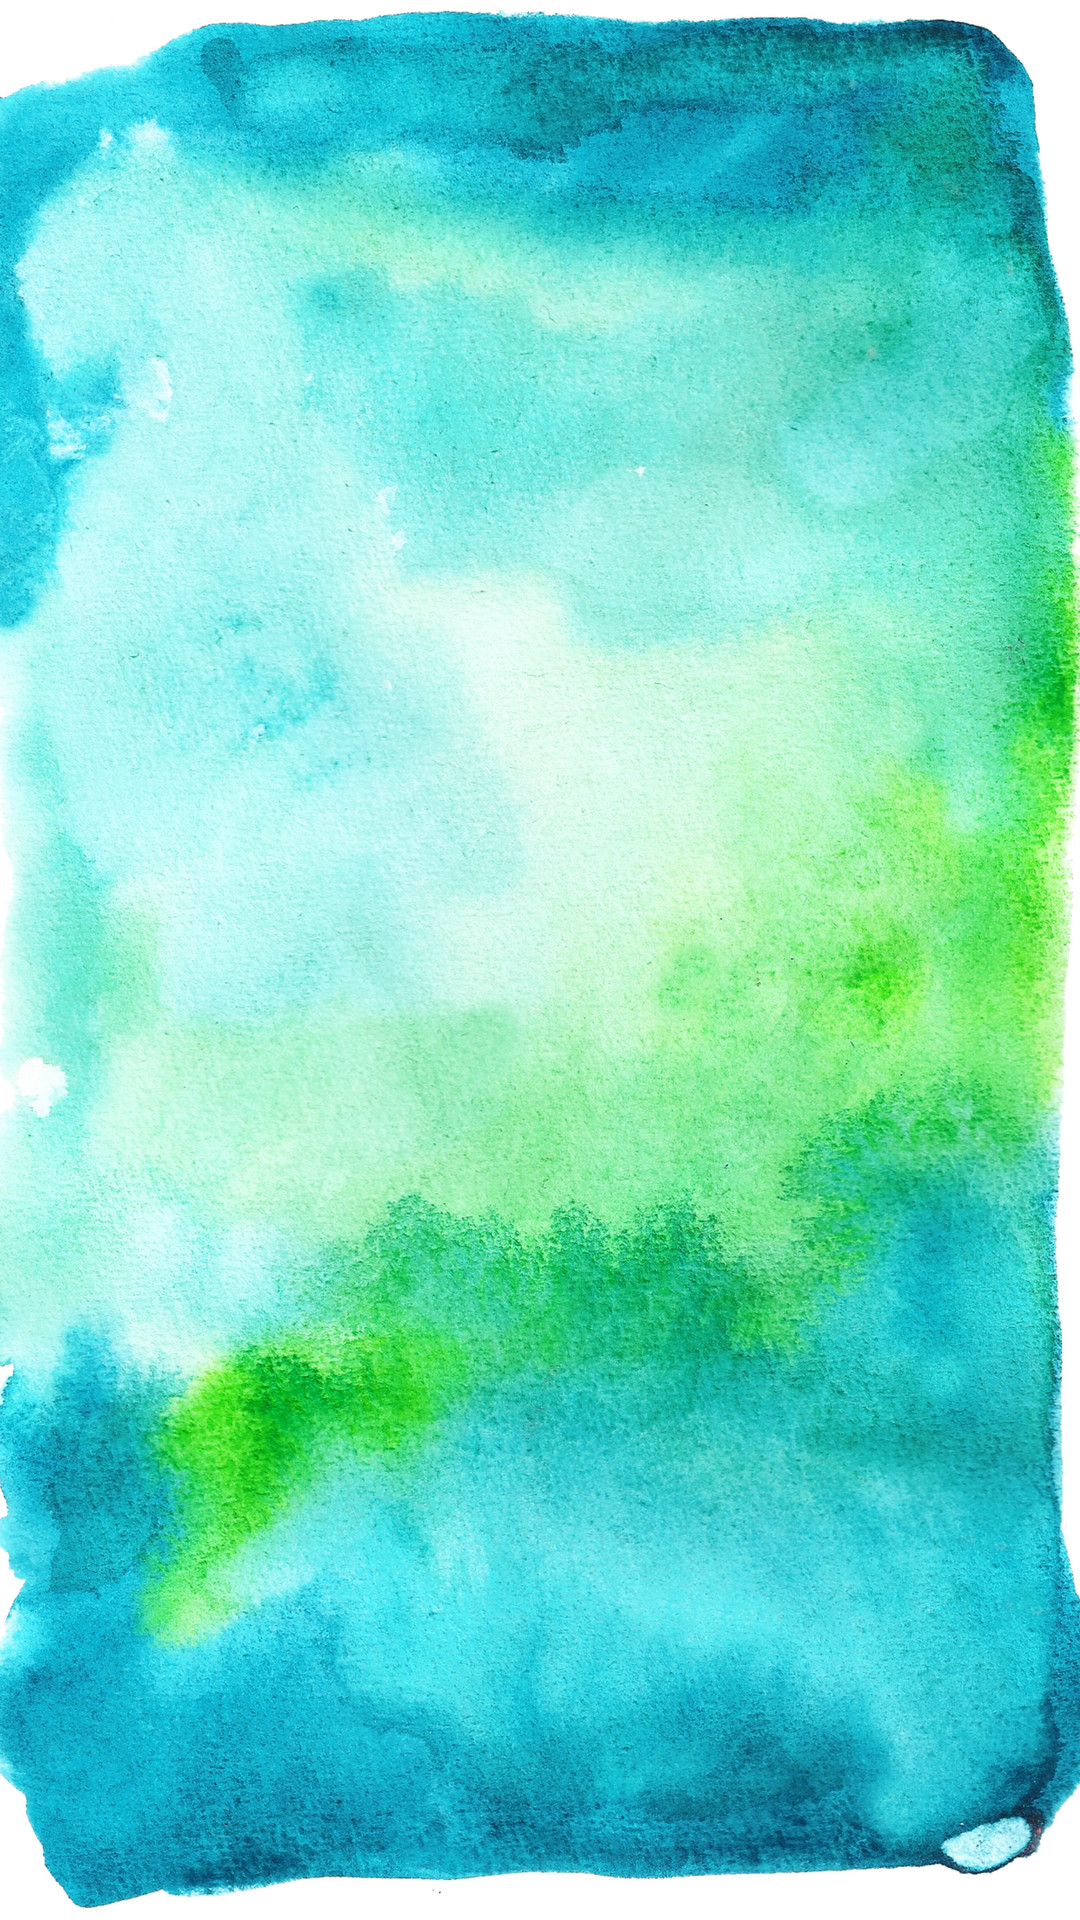 aquarell tapete,grün,blau,aqua,himmel,türkis